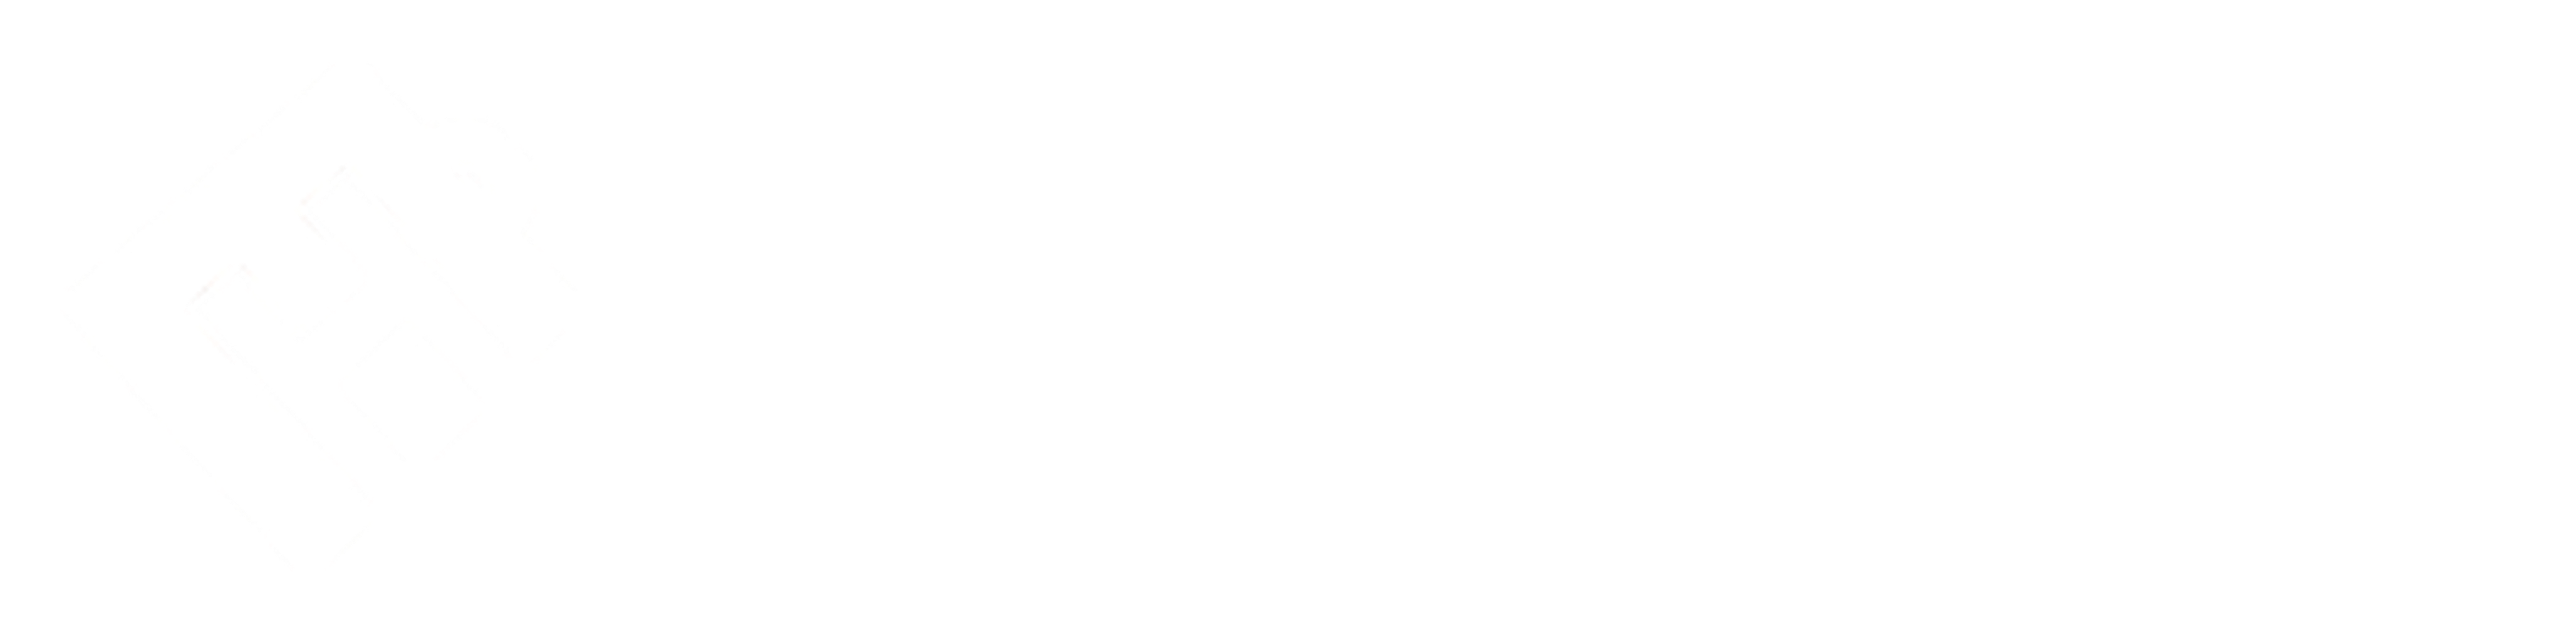 EtsyHunt_logo